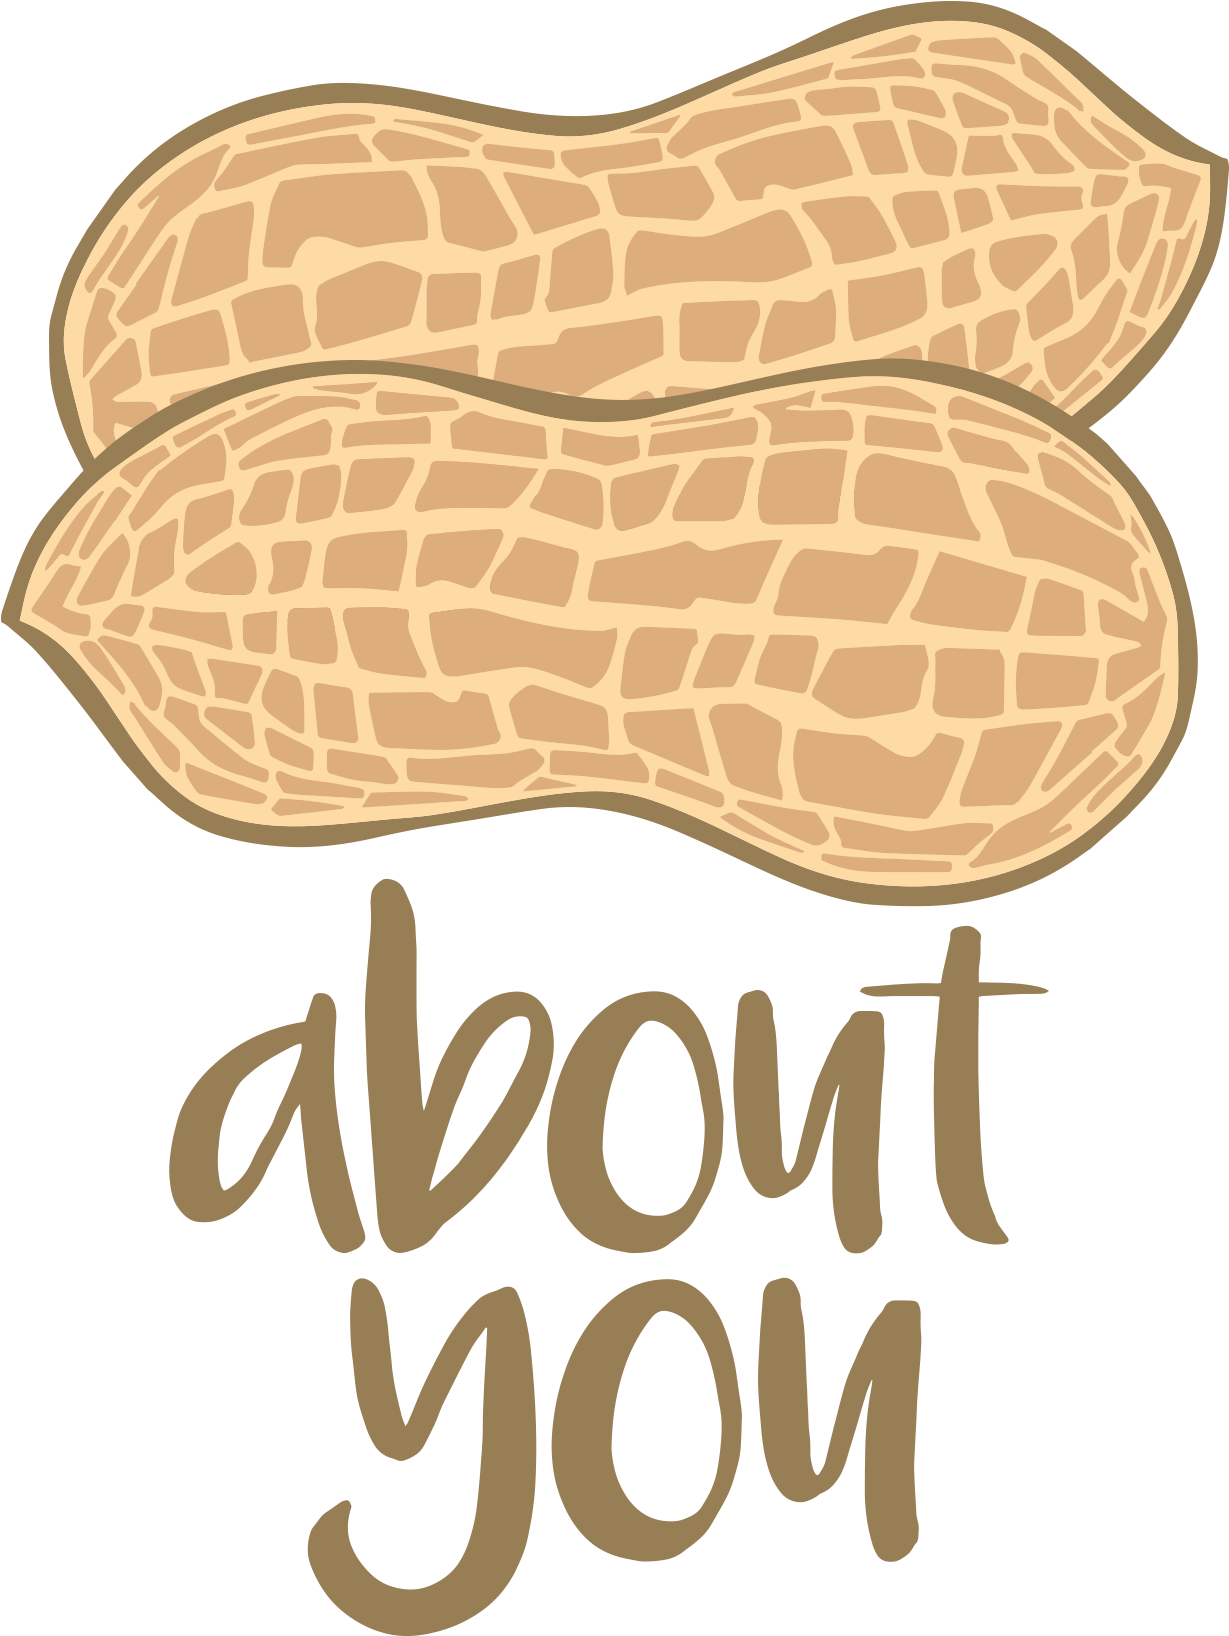 Nuts - - Peanut (1240x1754)